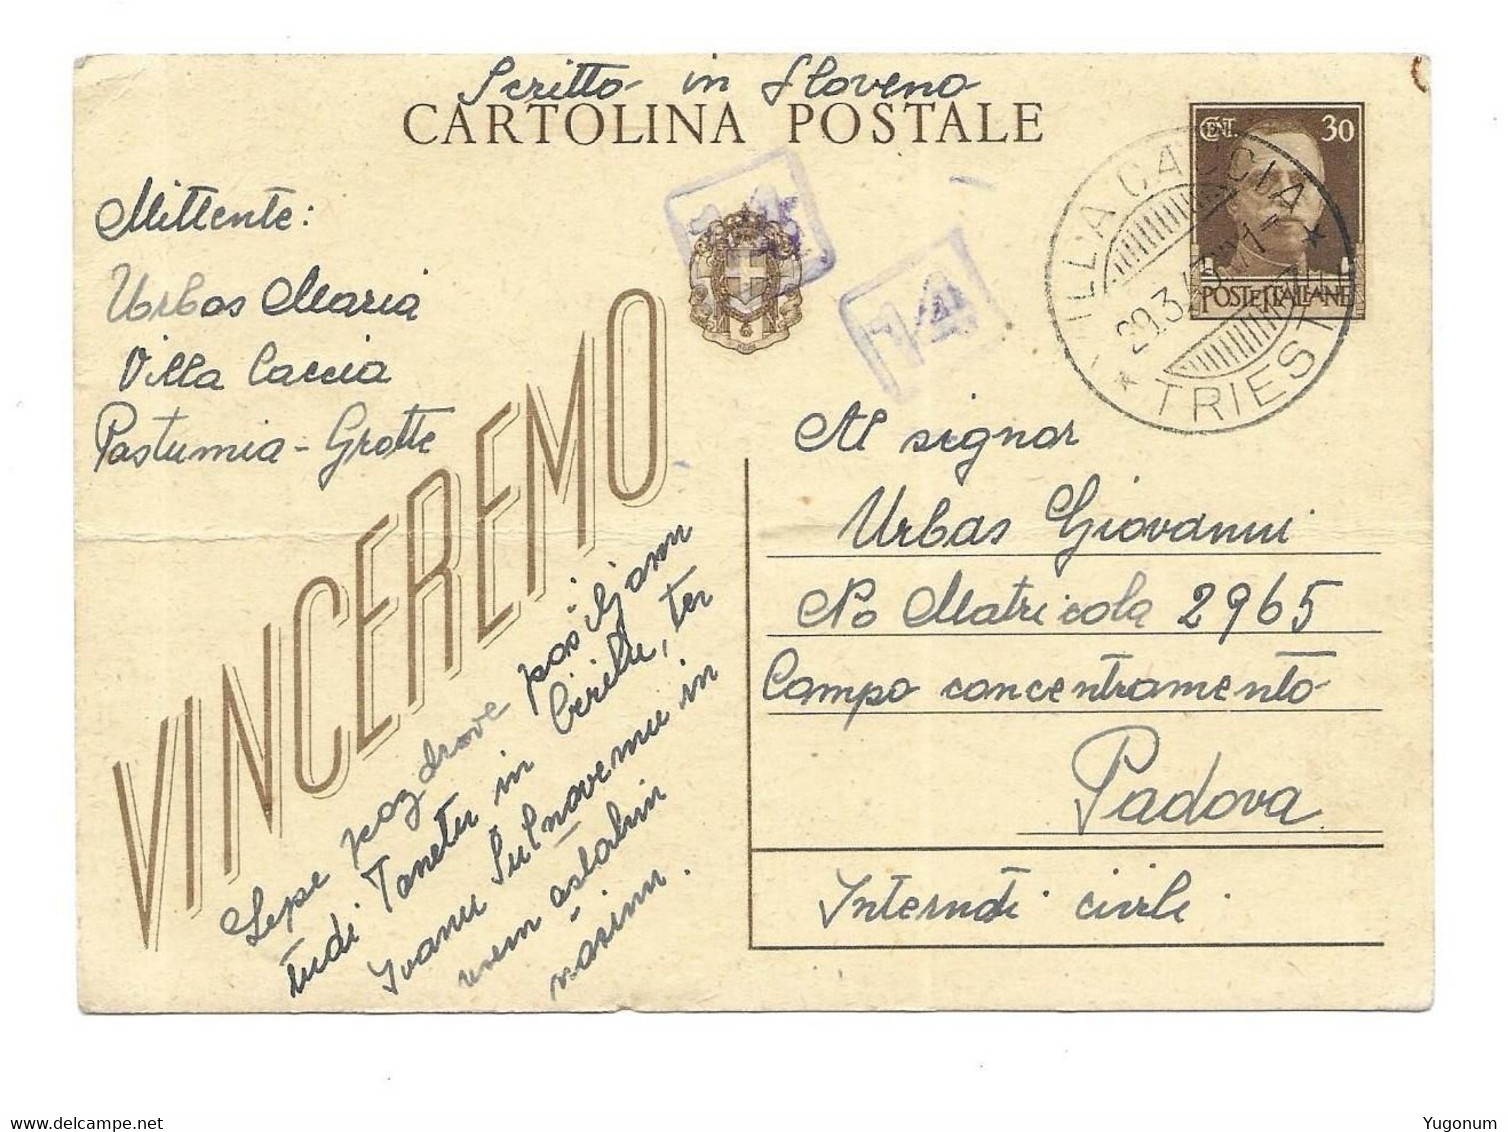 ITALY Slovenia 1943 Stationary With Stamp VILLA CACCIA (Kacja Vas)  Auxilliary Post Extremely Rare (1106) - Lubiana